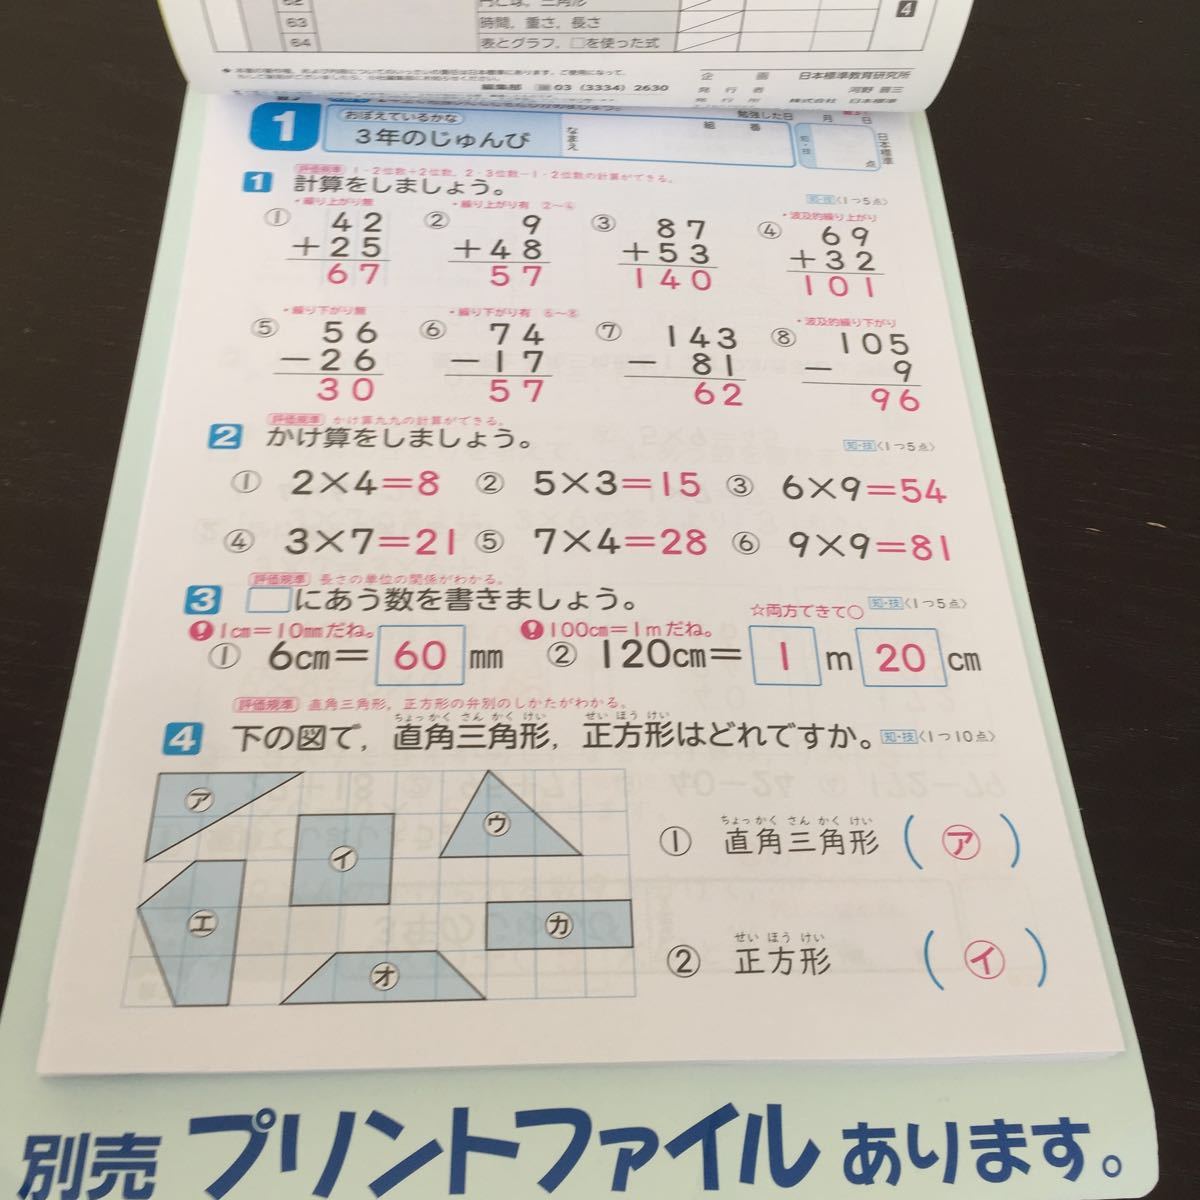 Fド76 三年生学習ドリル問題集国語算数漢字理科社会英語テスト勉強小学生テキストテスト用紙教材文章問題計算日本標準日本代购 买对网